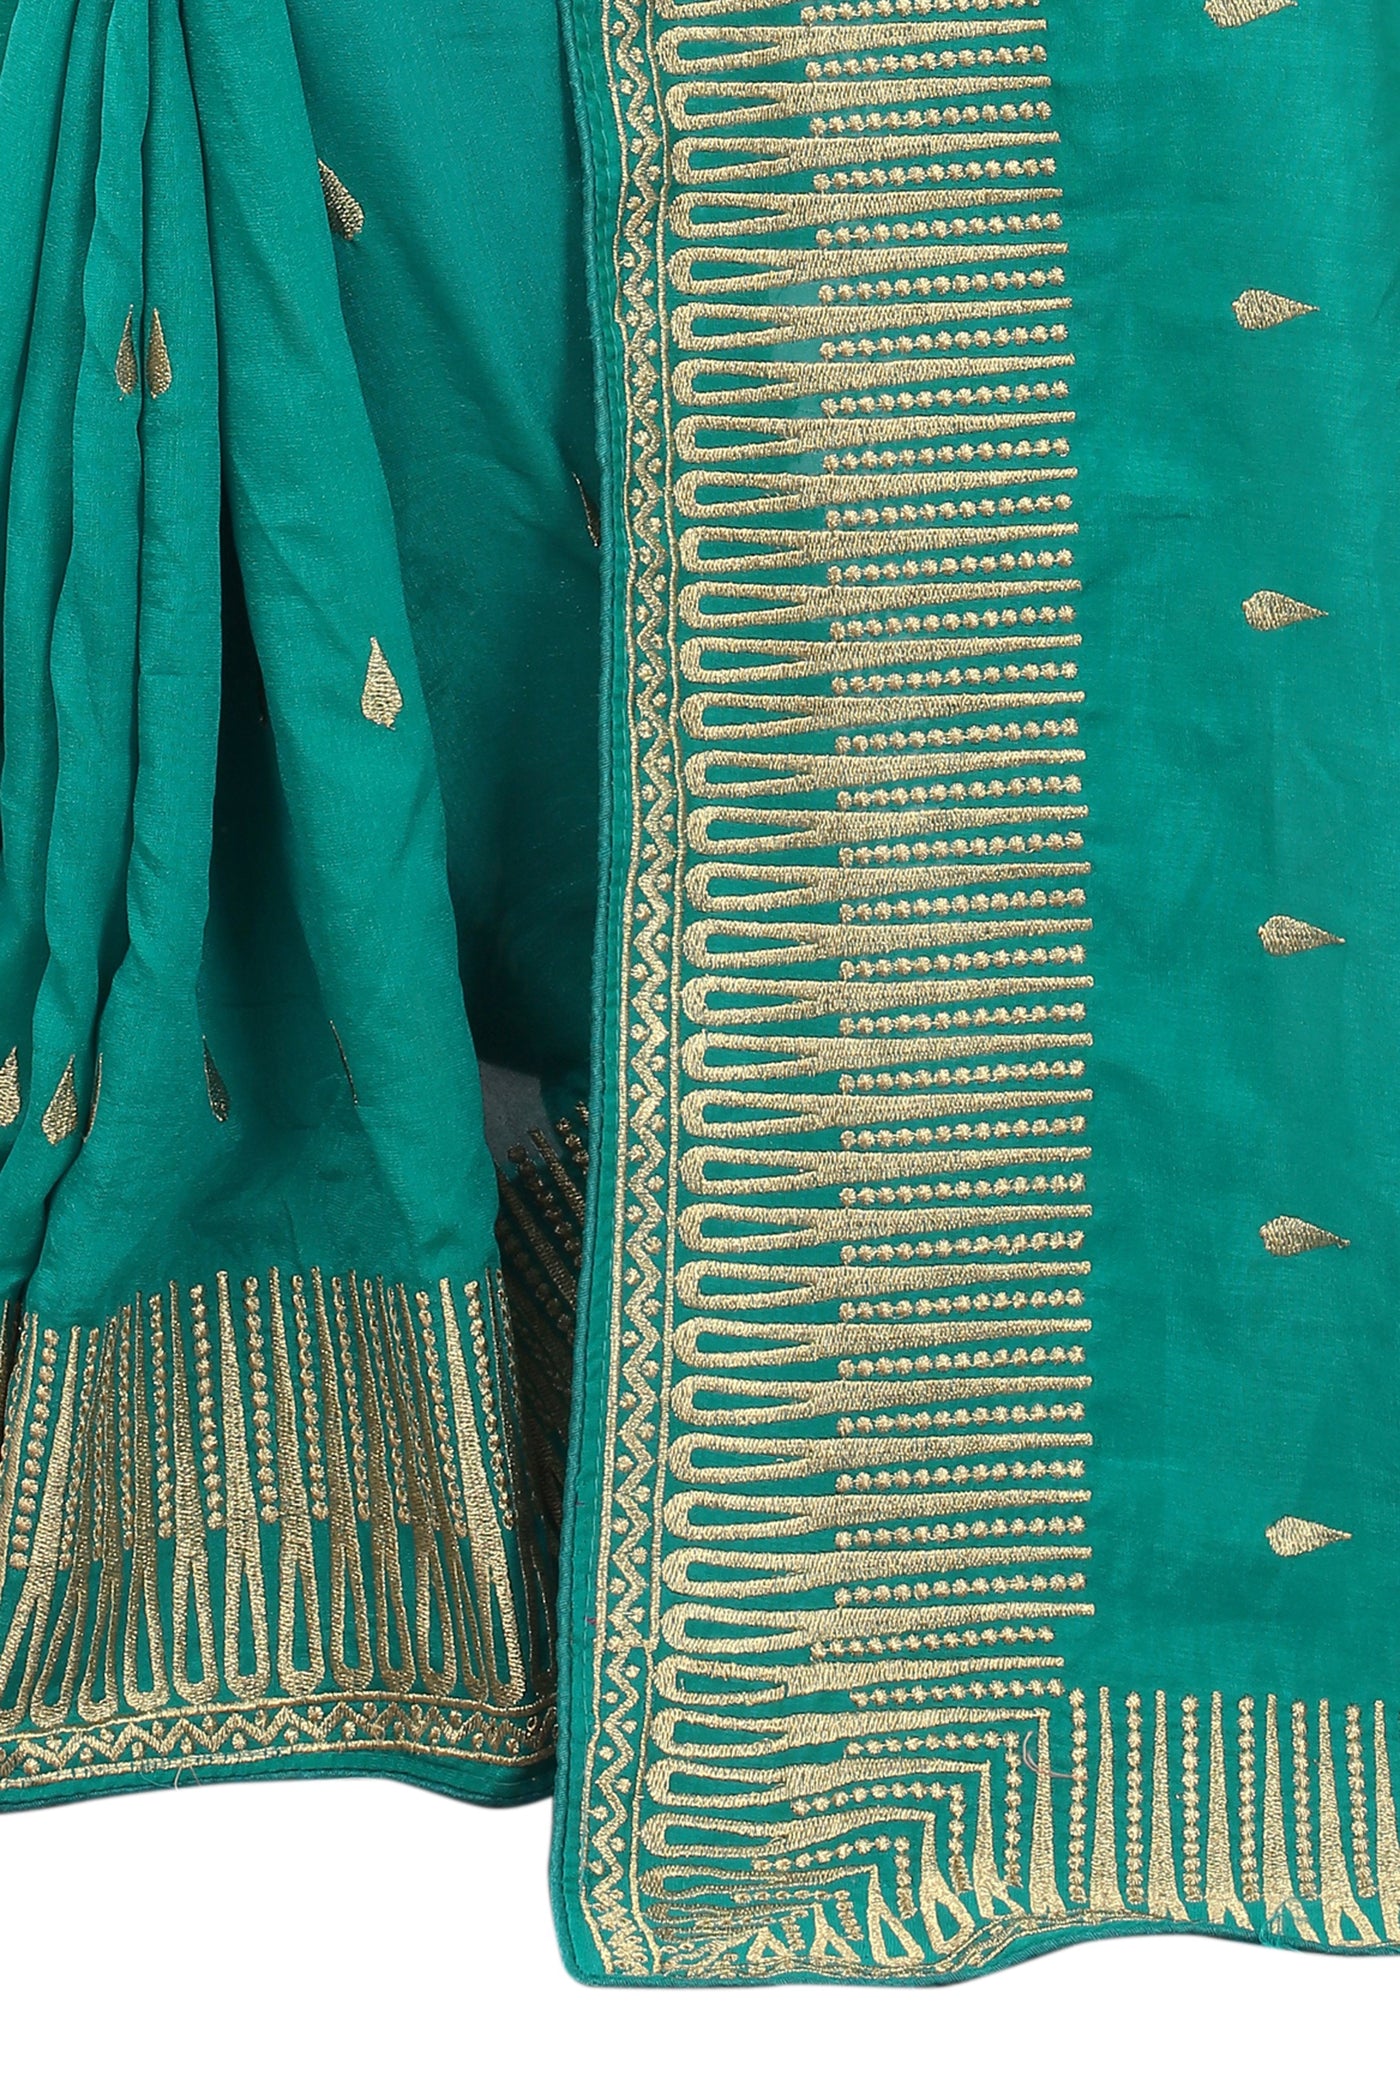 Vichitra Silk Green Saree With Blouse